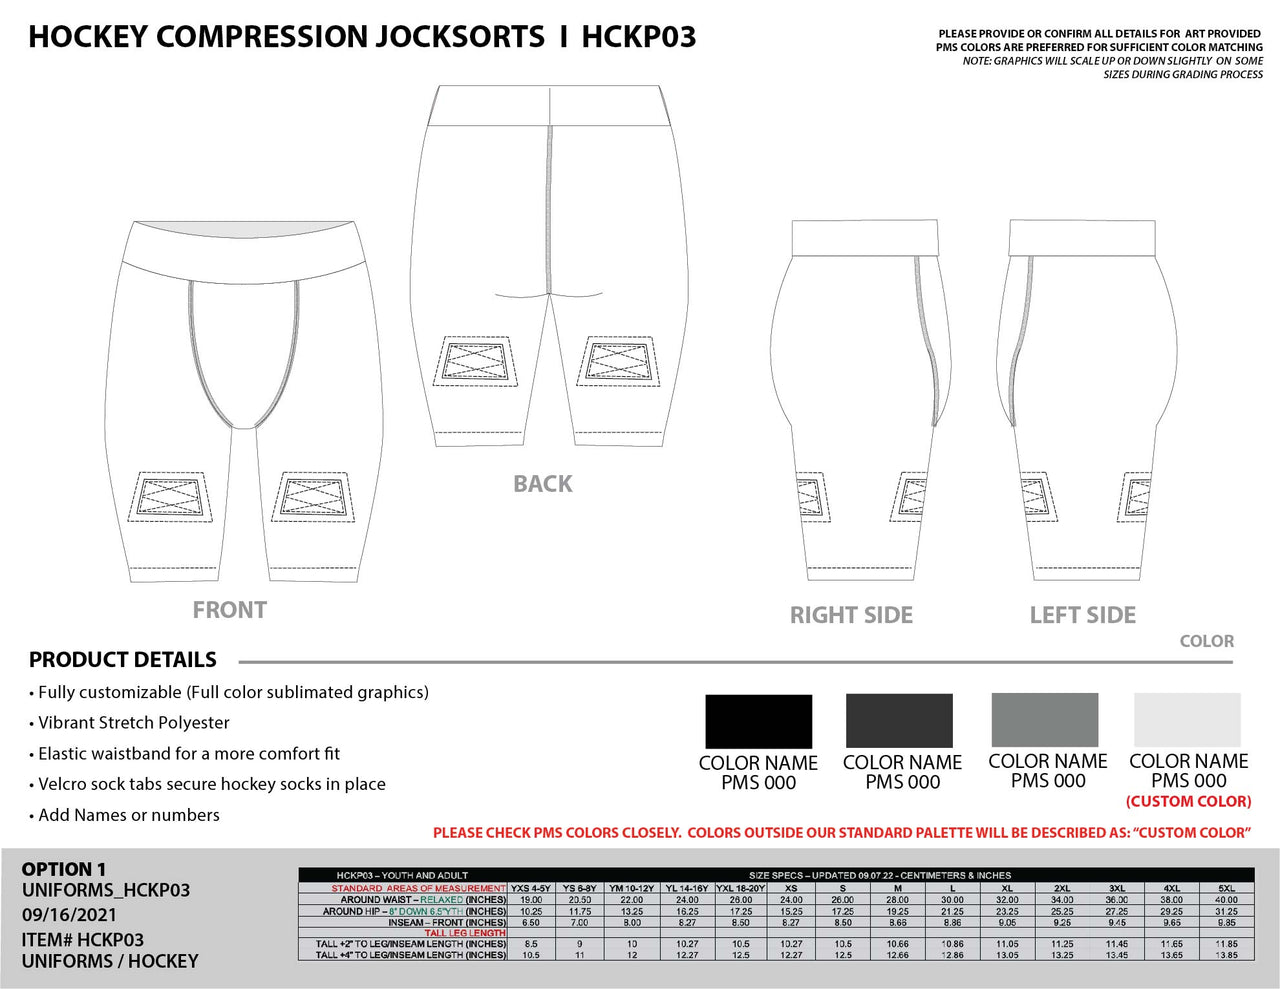 Custom Hockey Compression Jockshorts